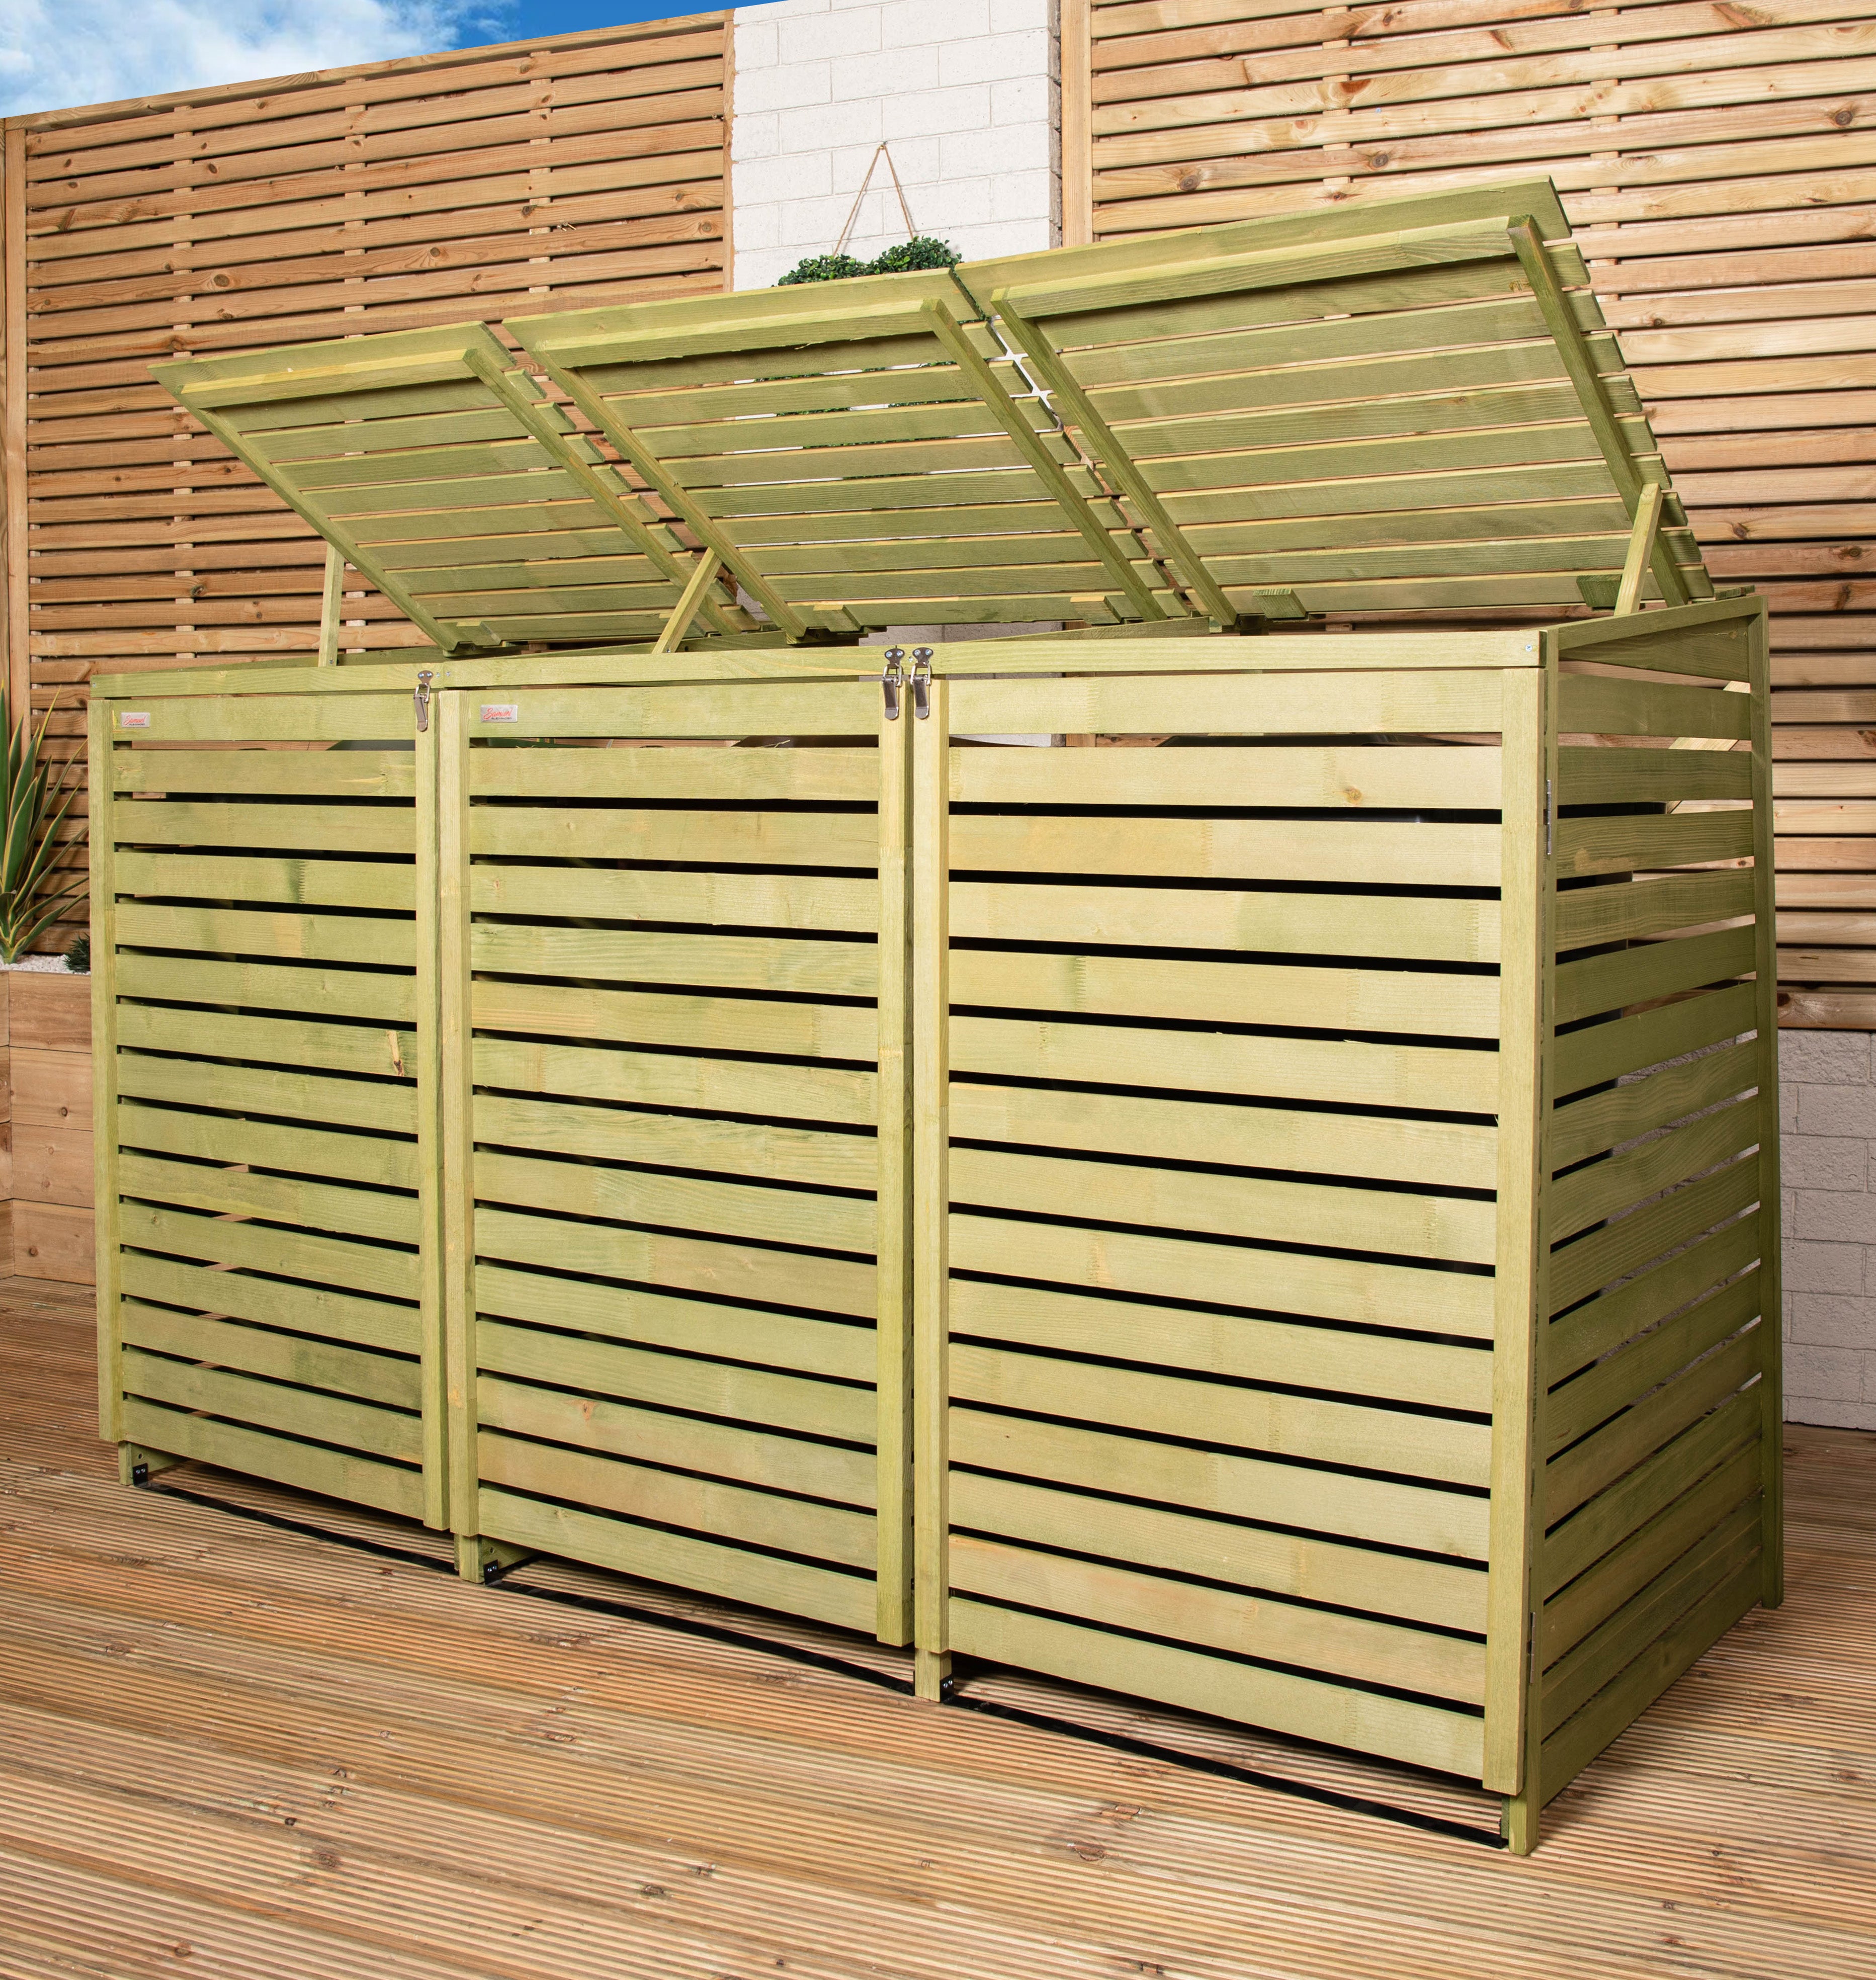 1.99m x 1.22m Large Wooden Outdoor Garden Triple Wheelie Bin Store Storage for 3 Bins